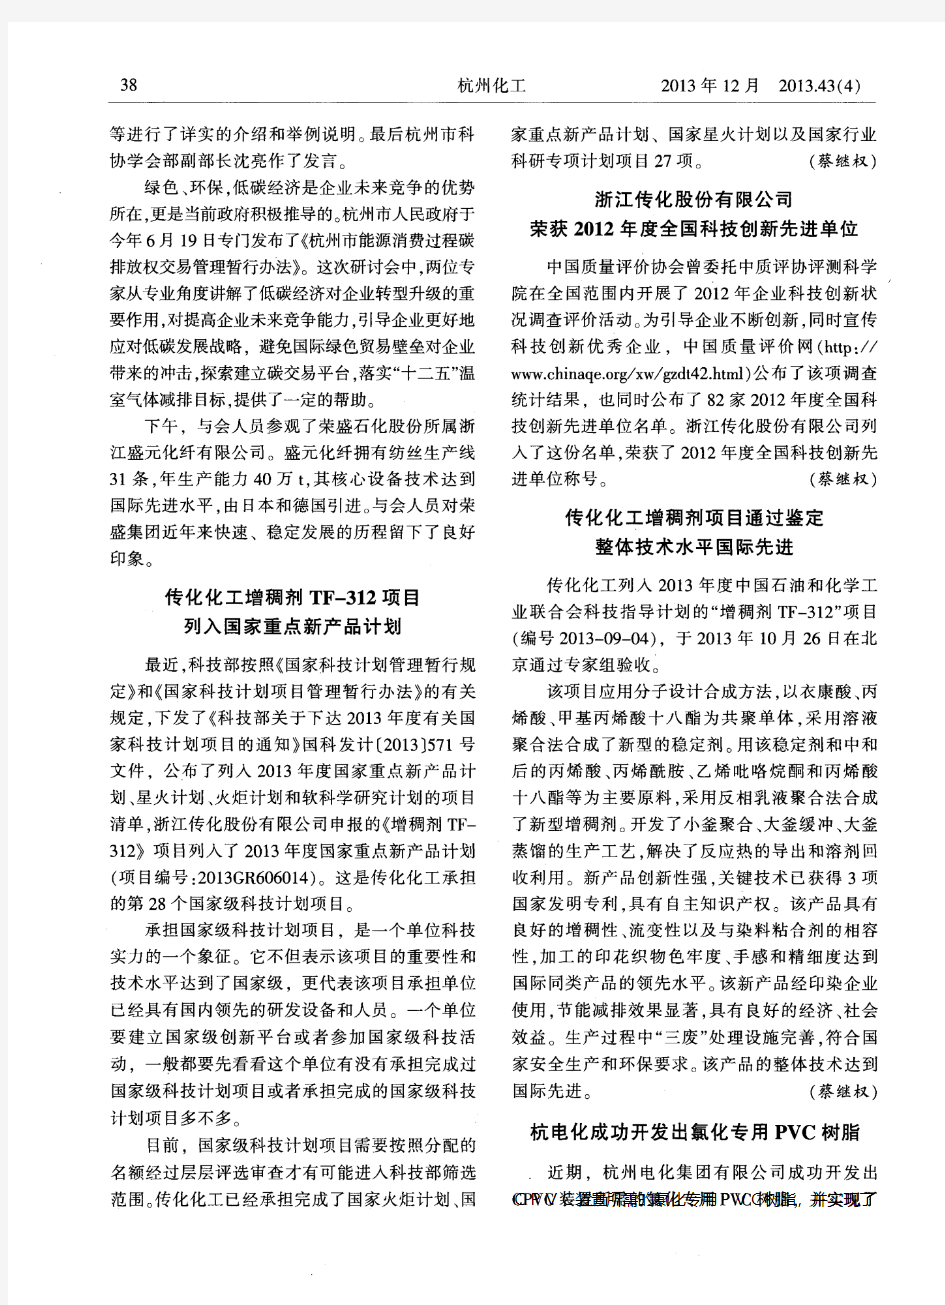 浙江传化股份有限公司荣获2012年度全国科技创新先进单位